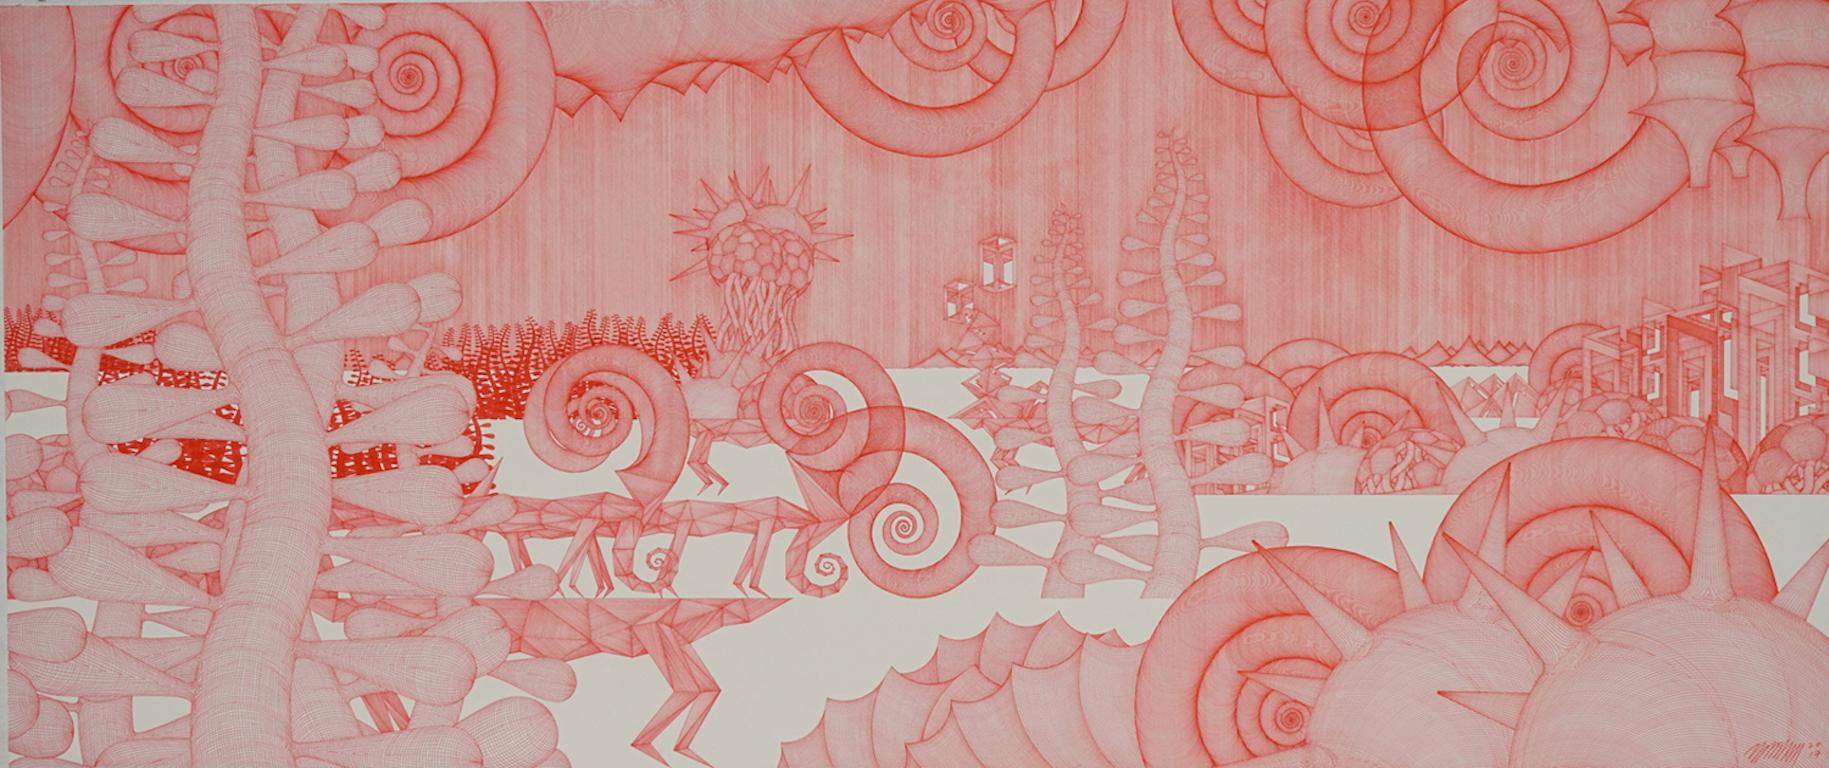 Abstract Drawing Cheolyu Kim - Journey #27 ( dessin au crayon rouge monochrome sur bois détaillé dansaekhwa orientale)